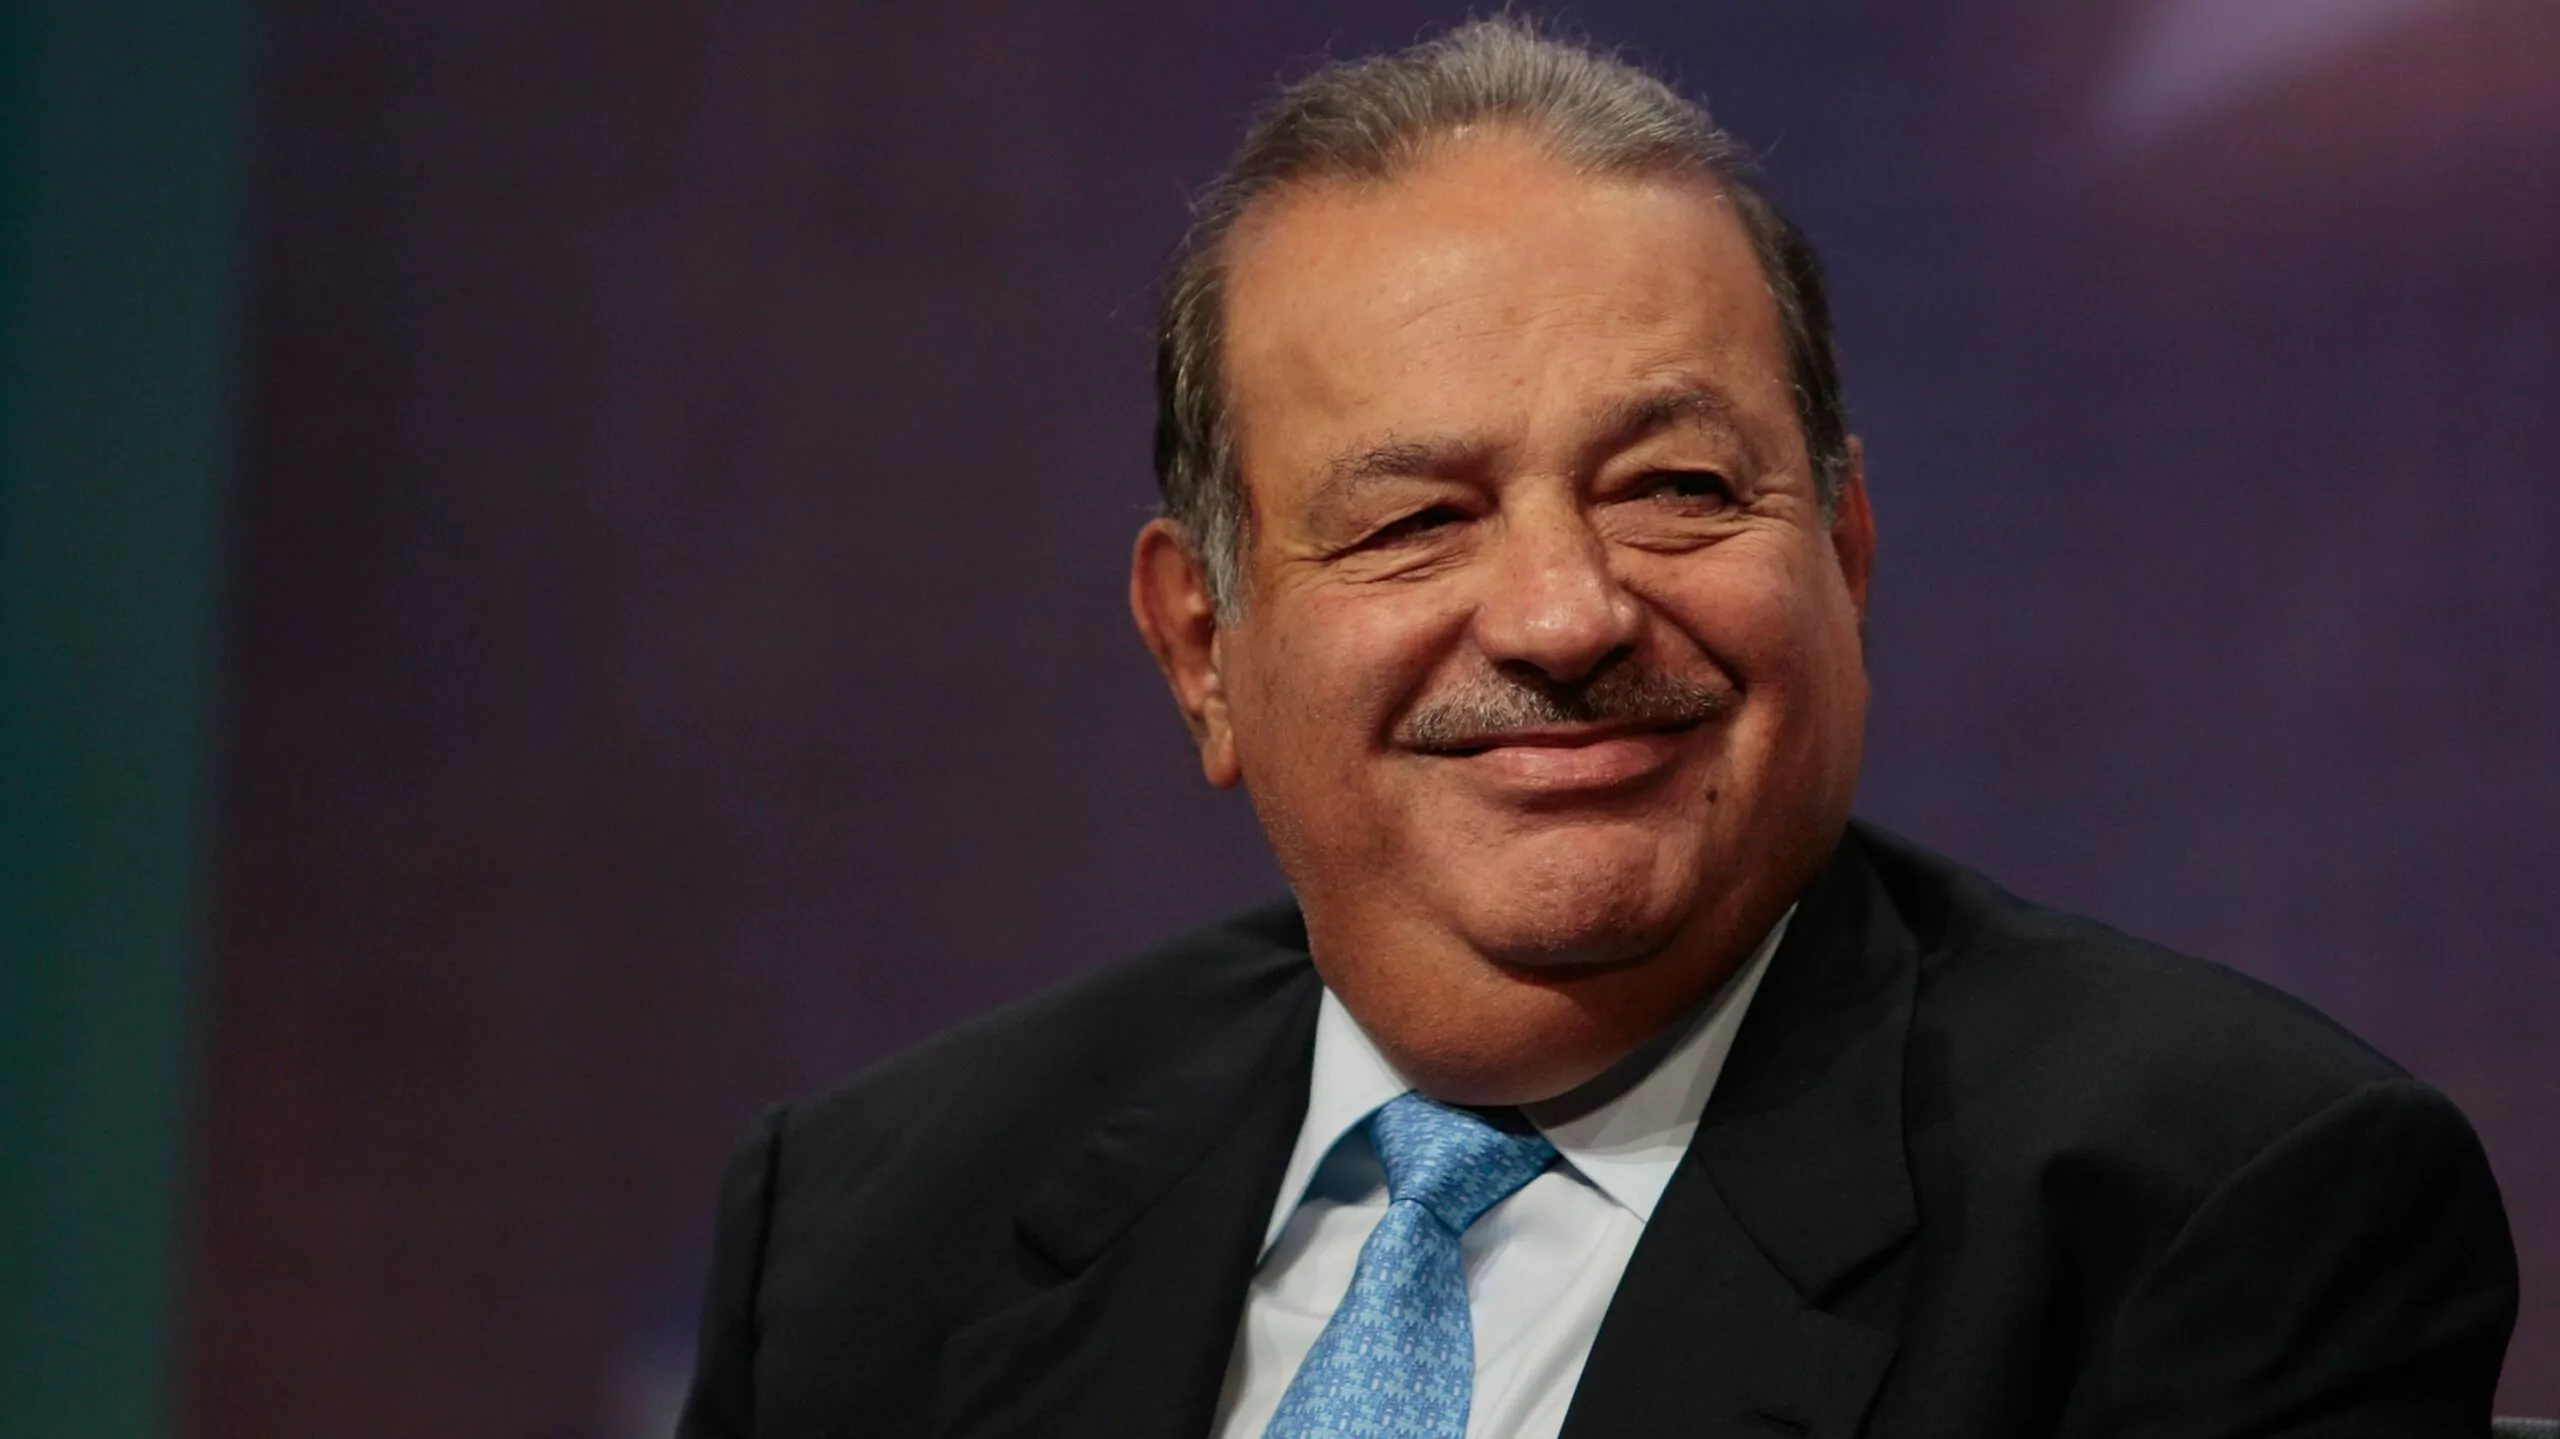 Las 10 principales empresas de Carlos Slim - Líder Empresarial